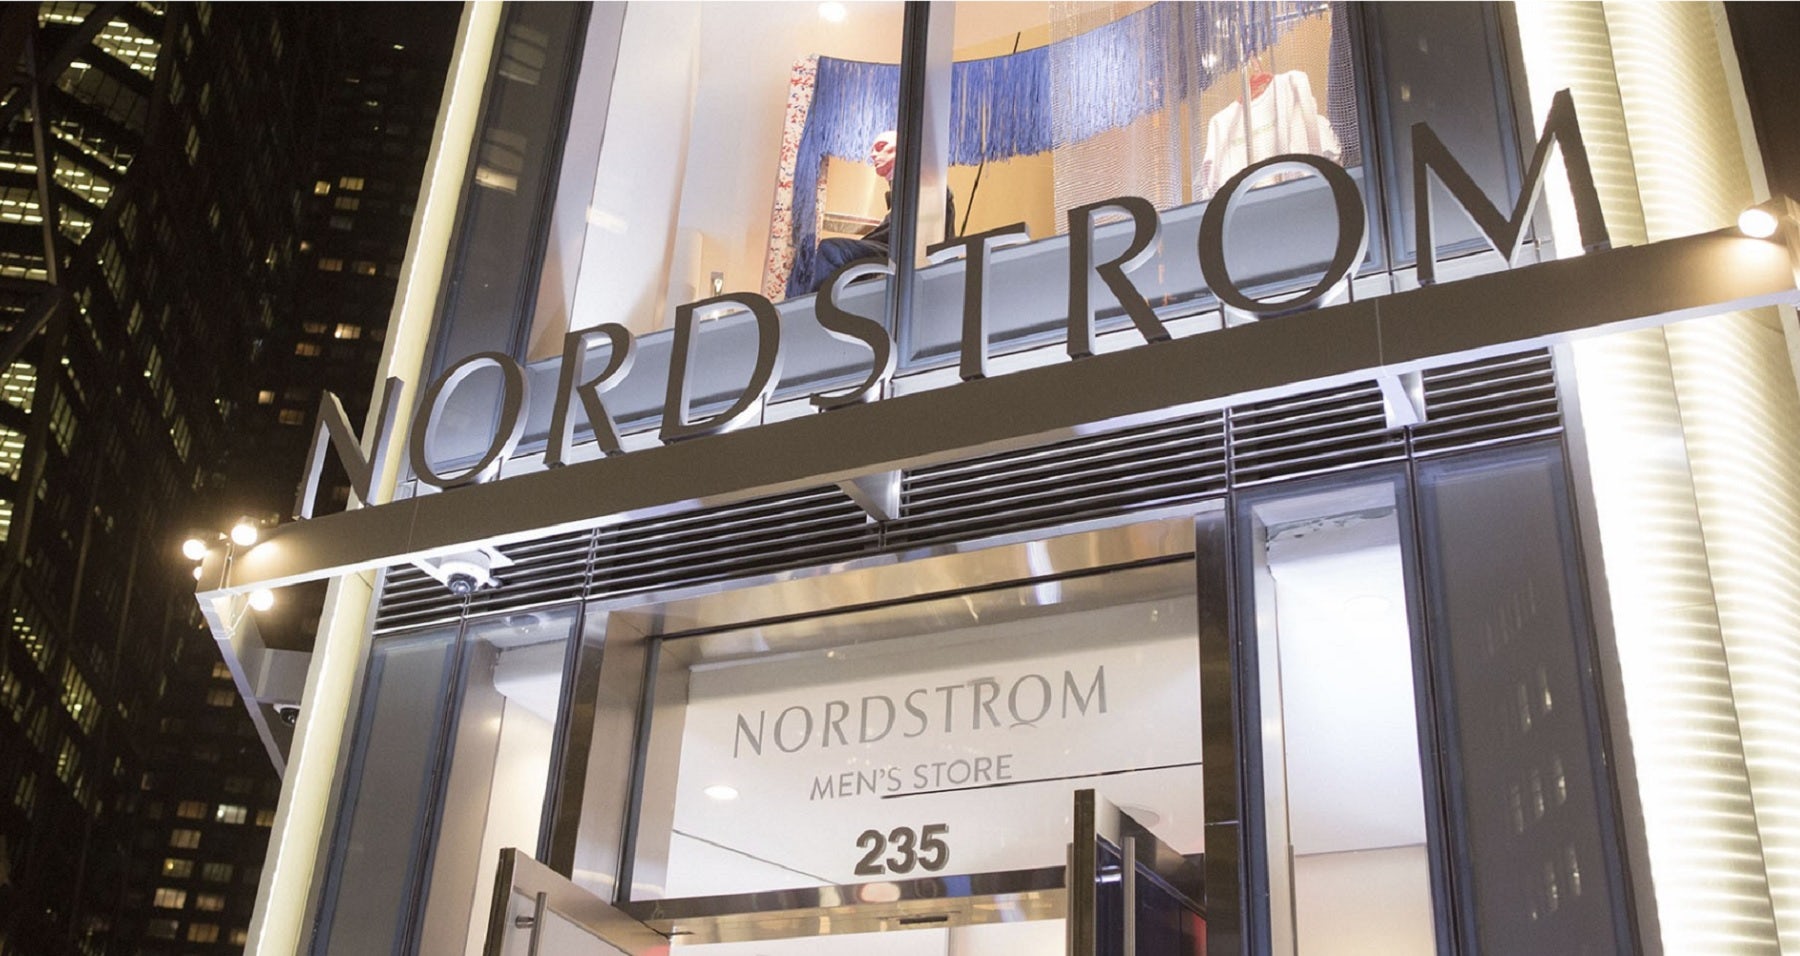 Nordstrom Men's Store